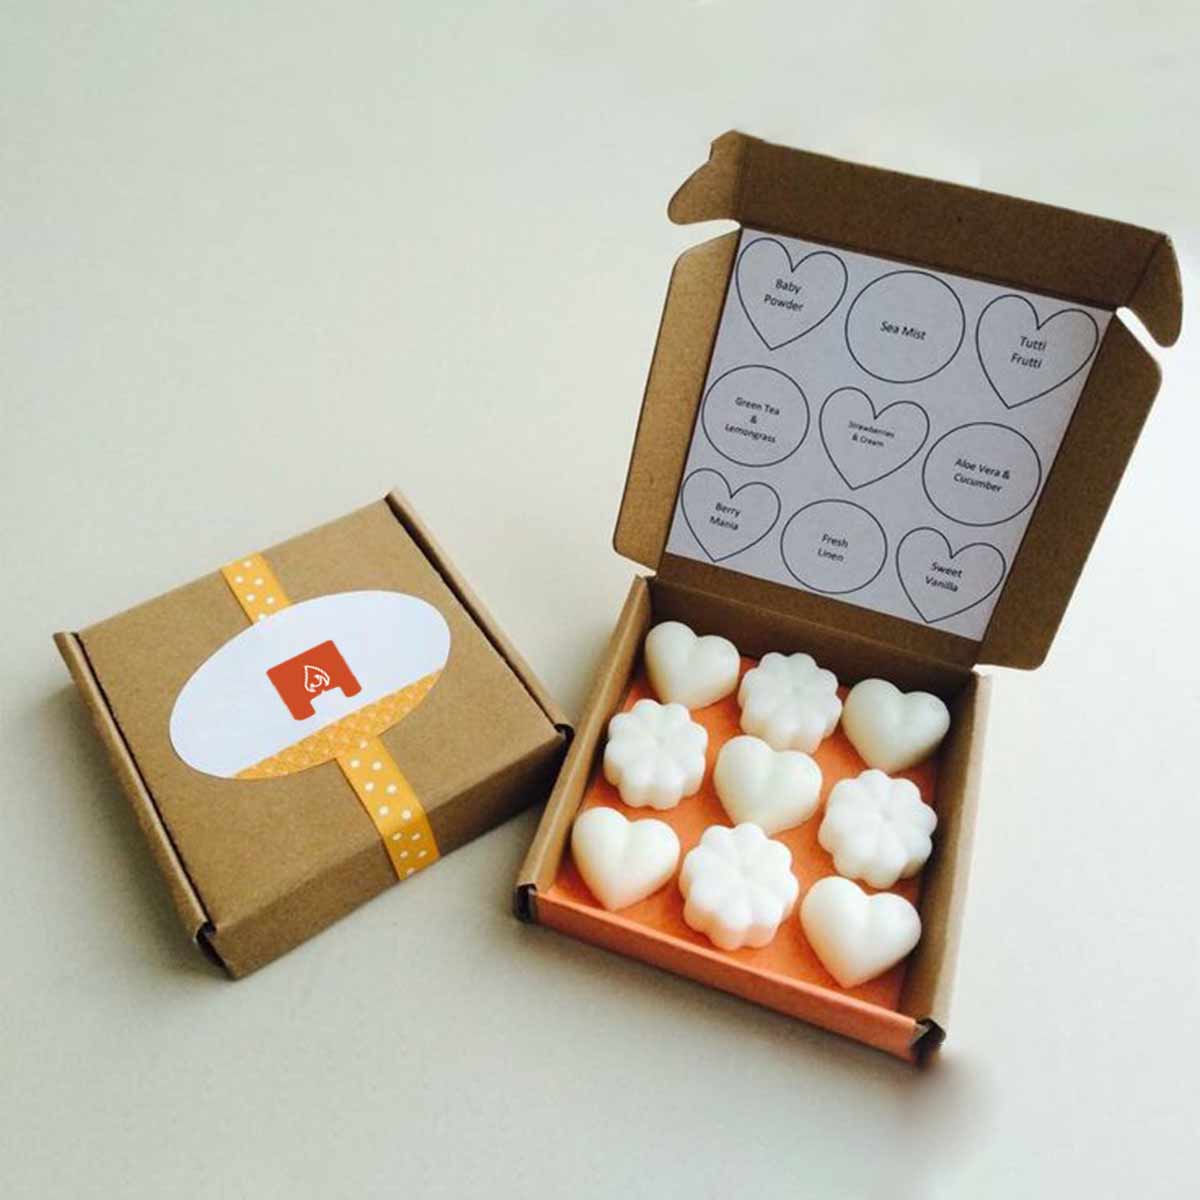 60 Wax Melt Packaging ideas  wax melts packaging, wax melts, wax